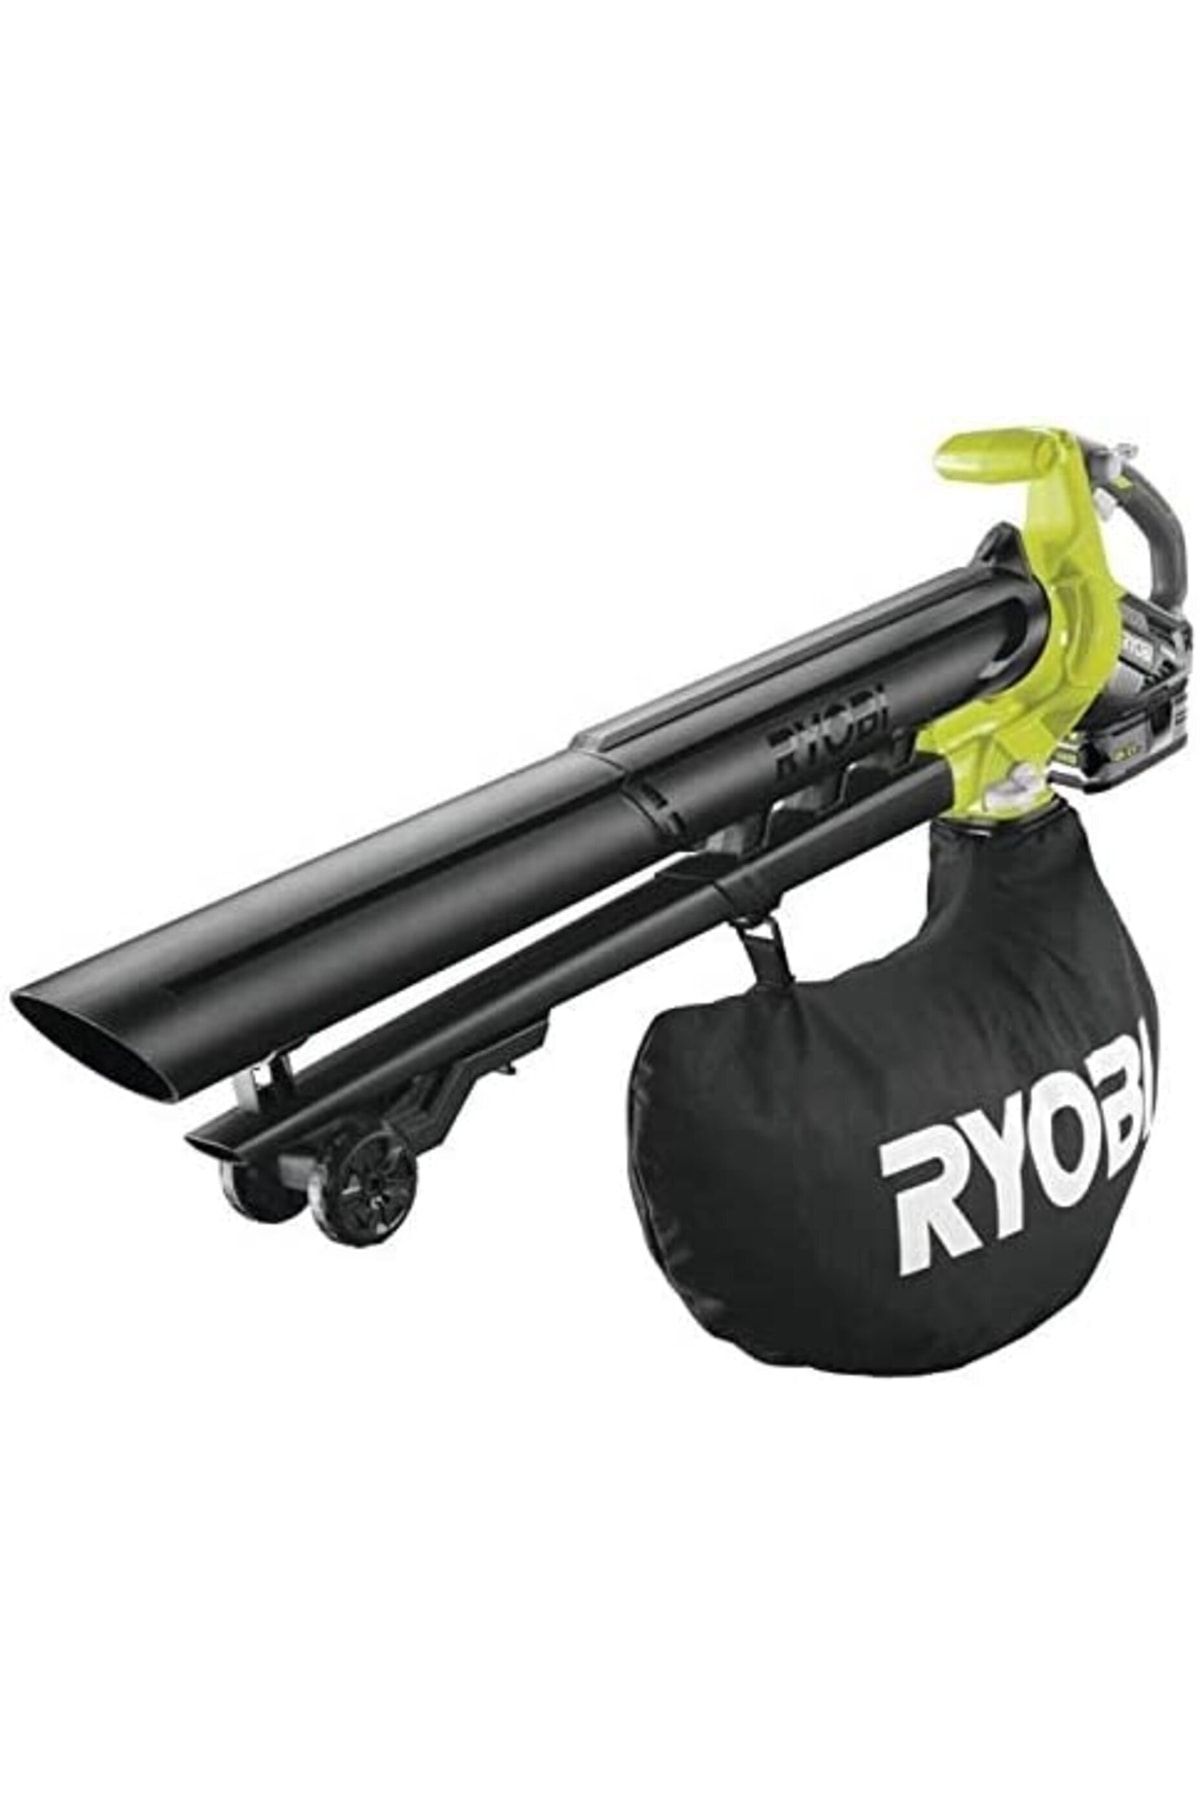 Ryobi Rbv1850 Kömürsüz Akülü Süpürge Ve Üfleme Makinası